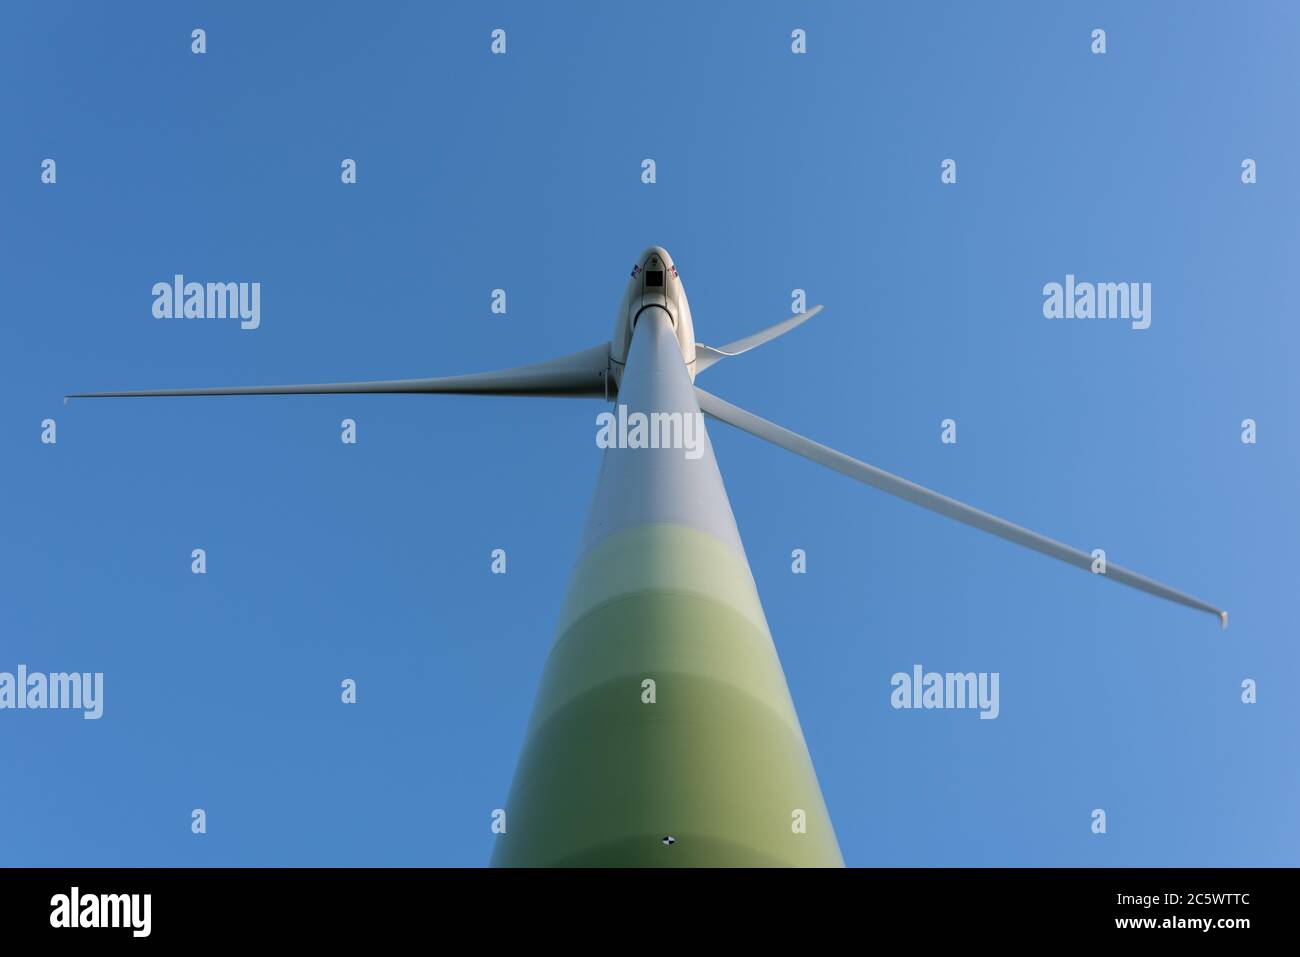 Windkraftanlagen zur ökologischen Stromversorgung sind in der windreichen ostfriesischen Küstenregion ideal zu betreiben. Stock Photo